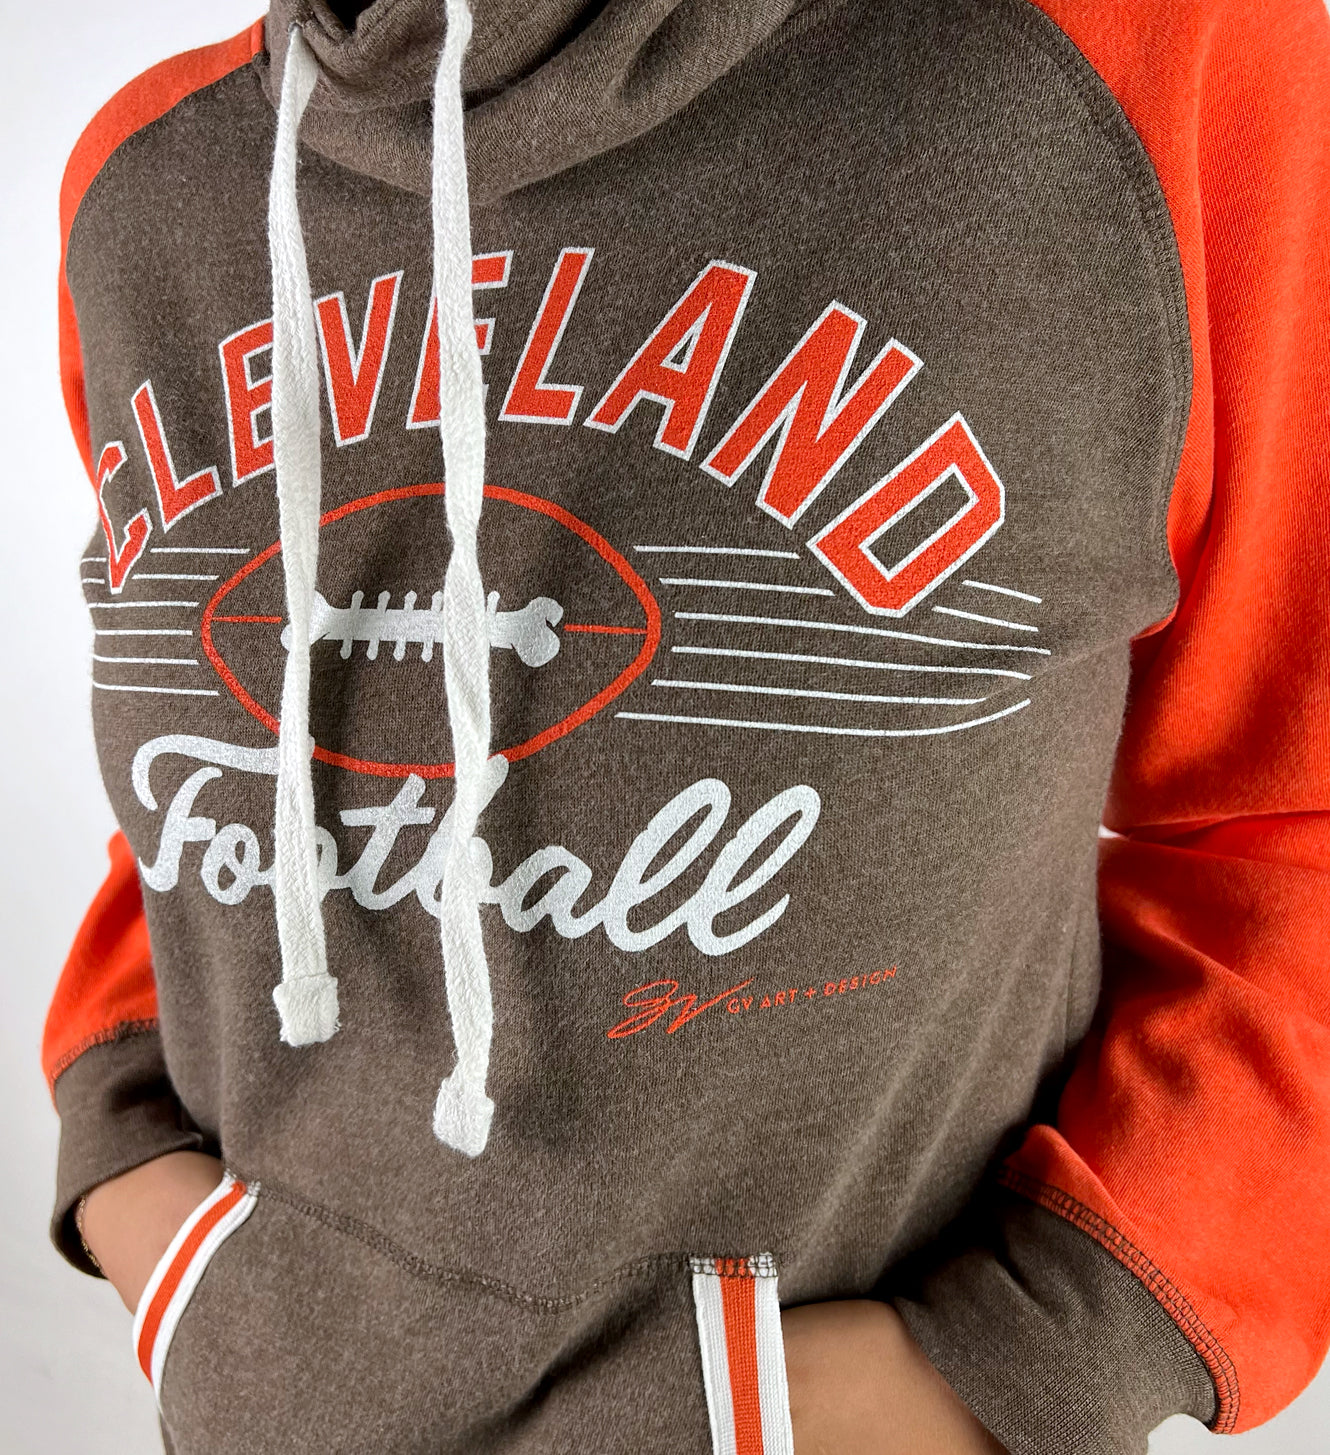 Official Ladies Cleveland Browns Hoodies, Browns Ladies Sweatshirts,  Fleece, Pullovers